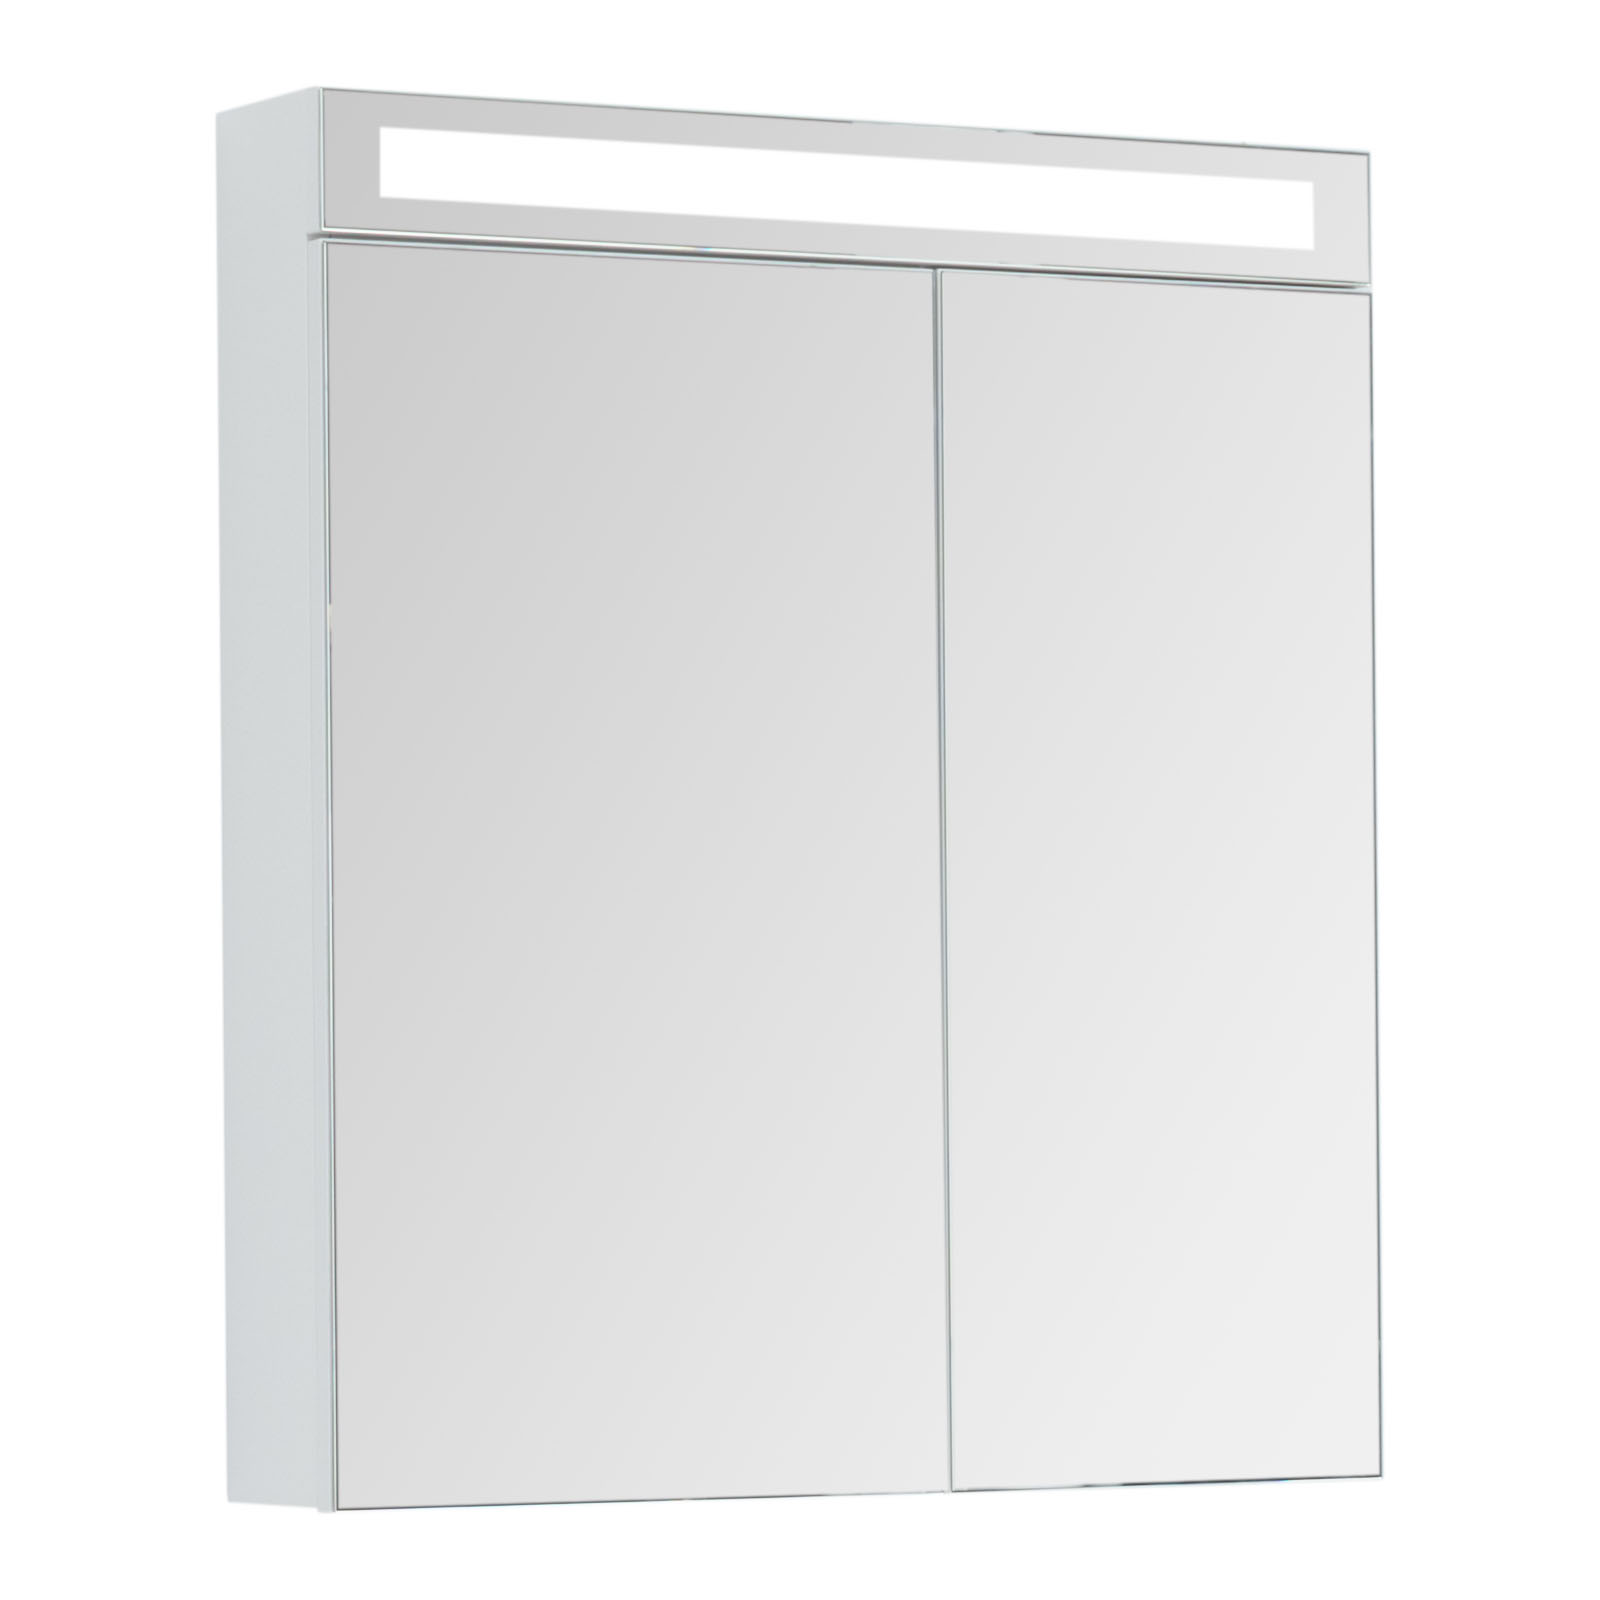 Зеркальный шкаф для ванной Dreja Max 70 белый глянец зеркальный шкаф emmy вэла 60х70 правый белый wel60bel r